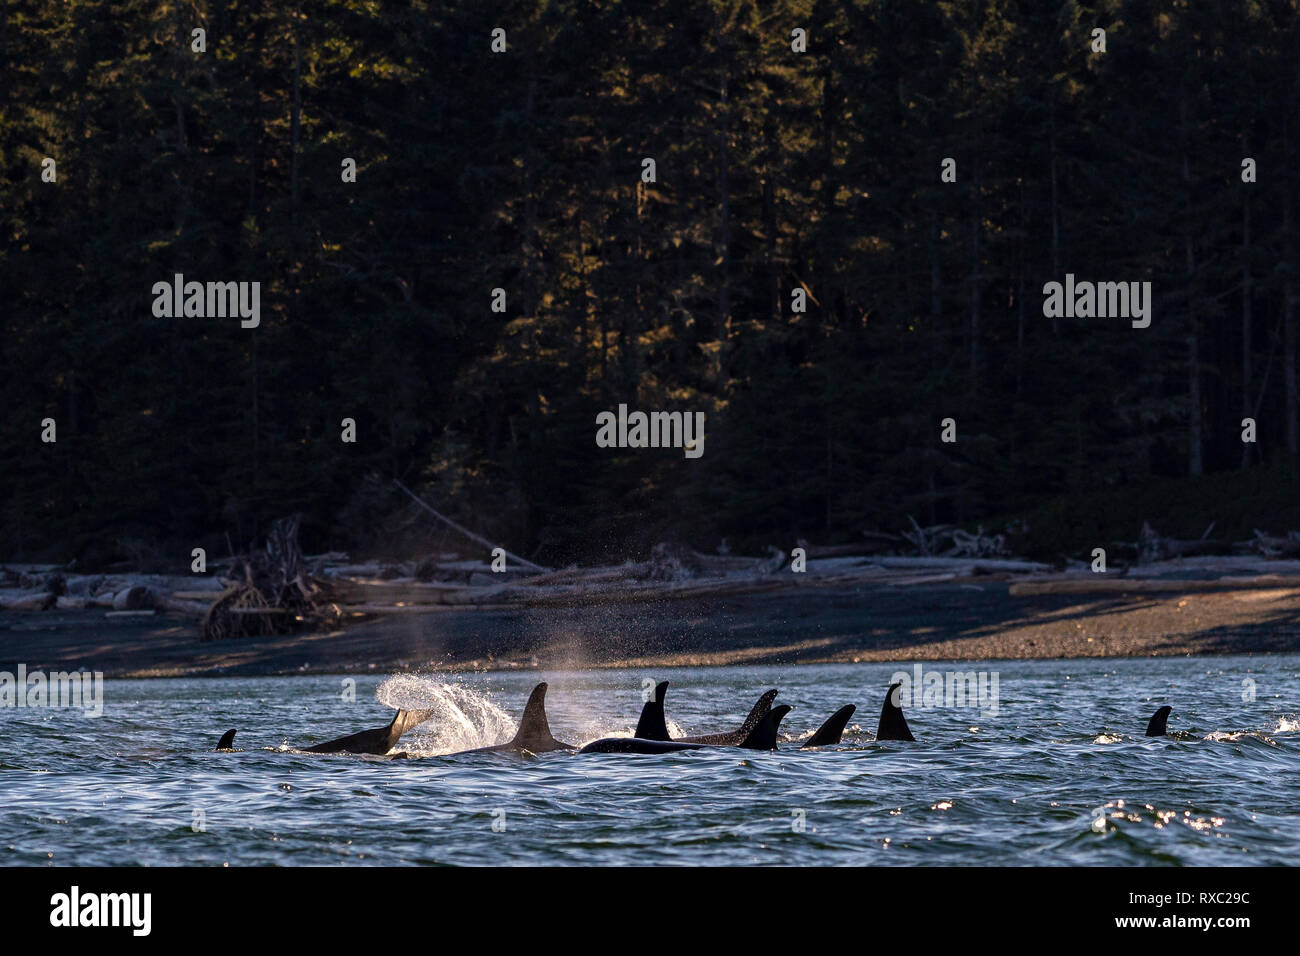 Nördliche Killerwale (A30, A42), die sich an der Küste von Malcolm Island entlang des Lizard Point an einem wunderschönen späten Nachmittag im First Nations Territory vor Vancouver Island, British Columbia, Kanada, ausruhen. Stockfoto